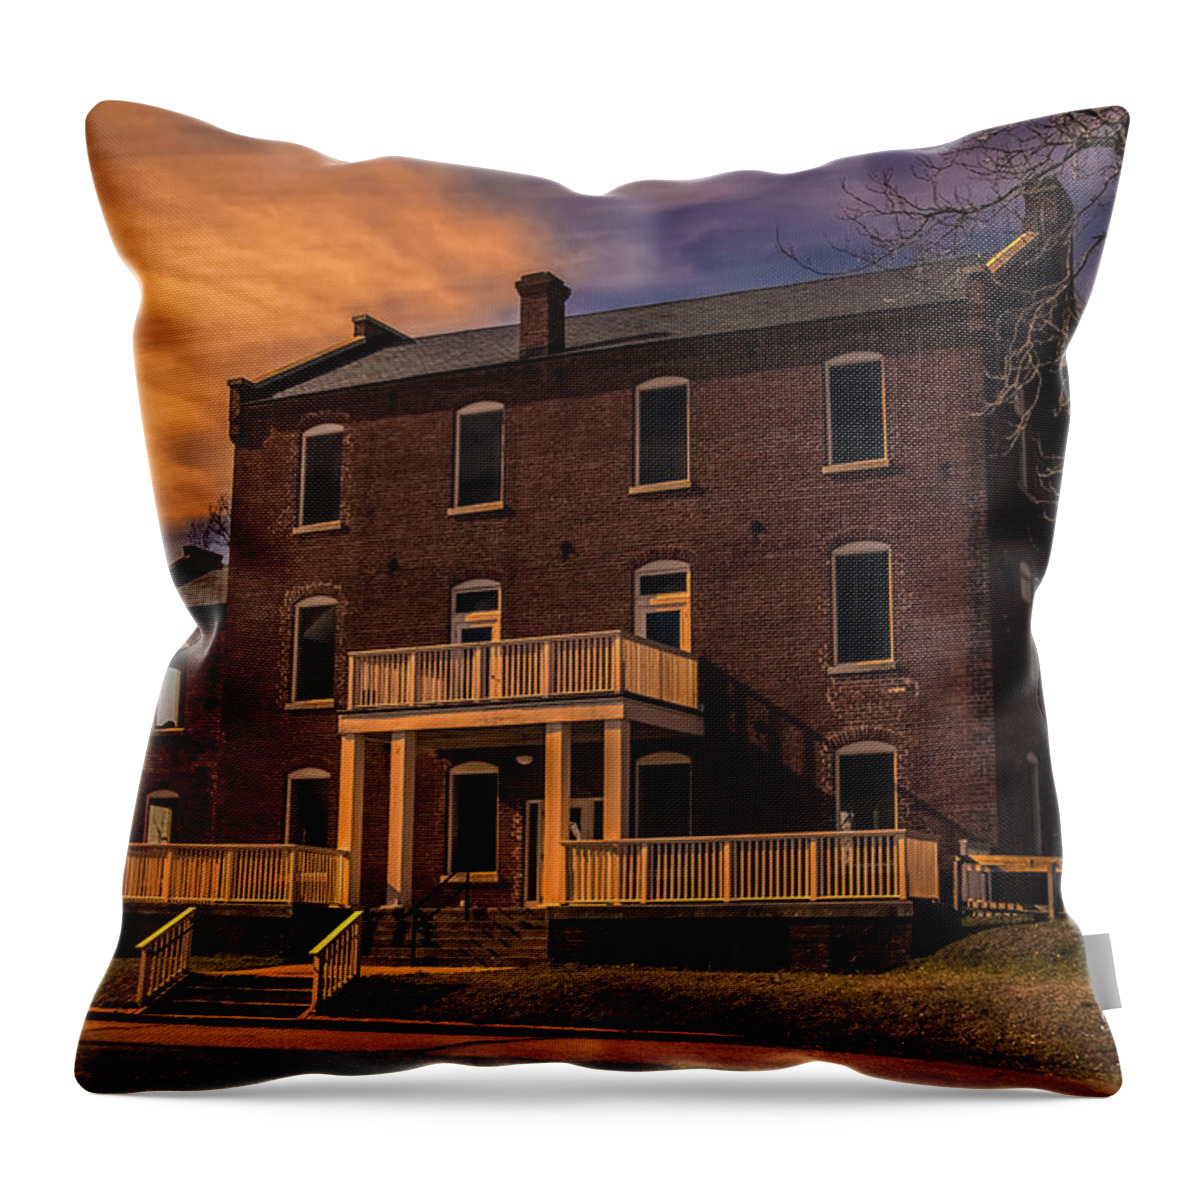 Weldon Throw Pillow featuring the photograph Mill at Dusk by Robert Mullen